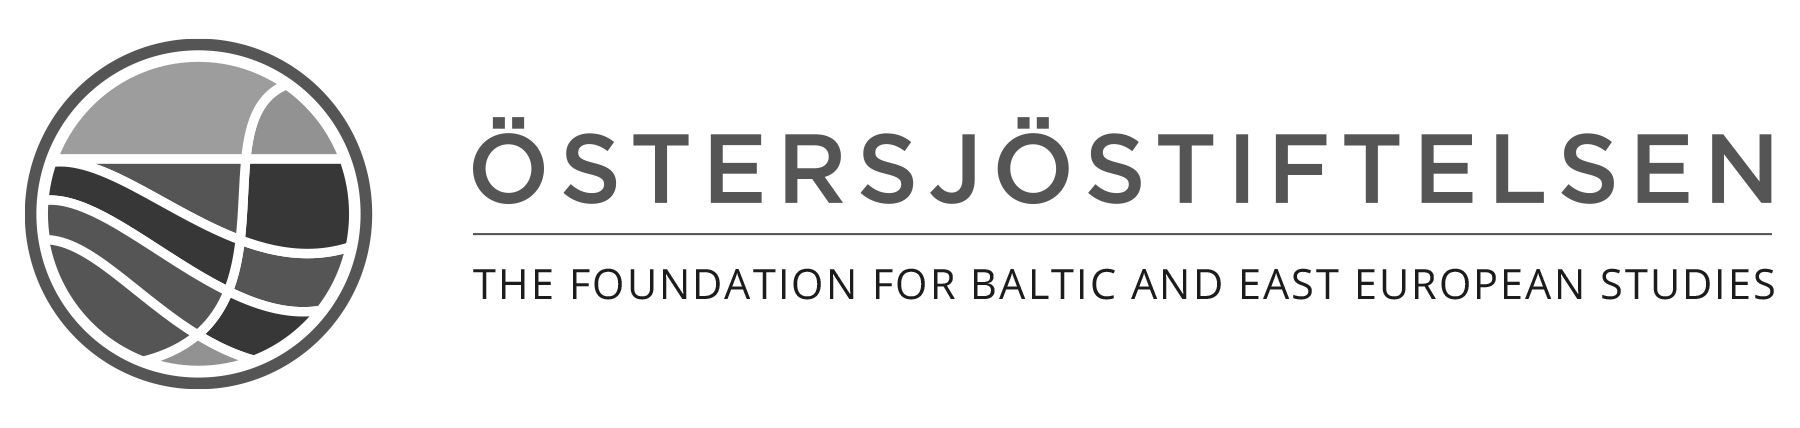 Östersjöstiftelsens logotyp.